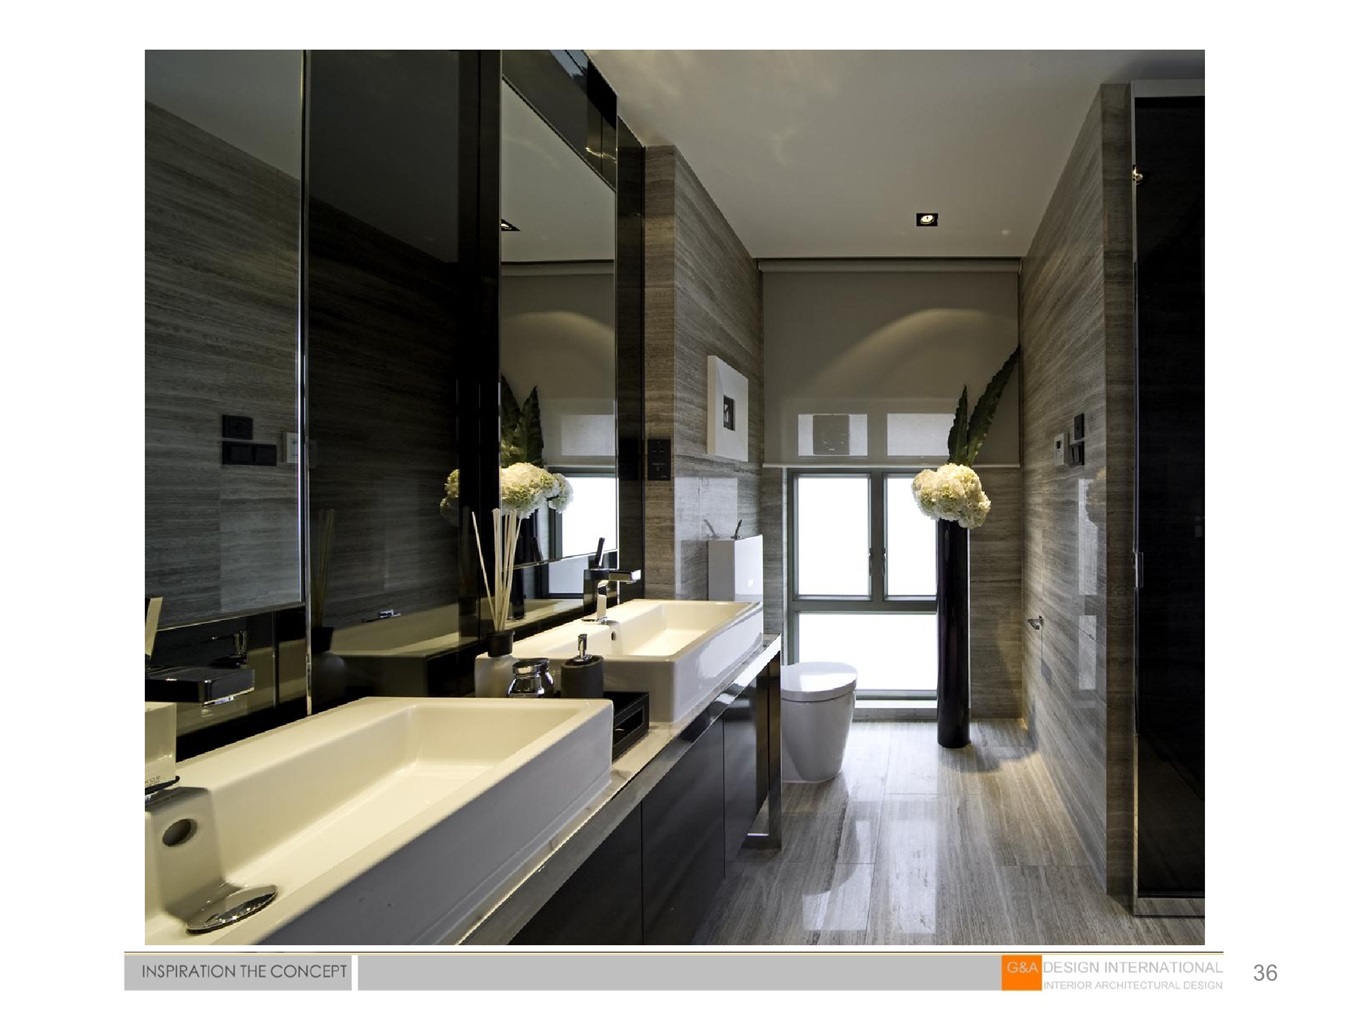 卫生间地面瓷砖采用灰色，搭配白色洁具整体显得协调有质感，视觉效果干净清爽。